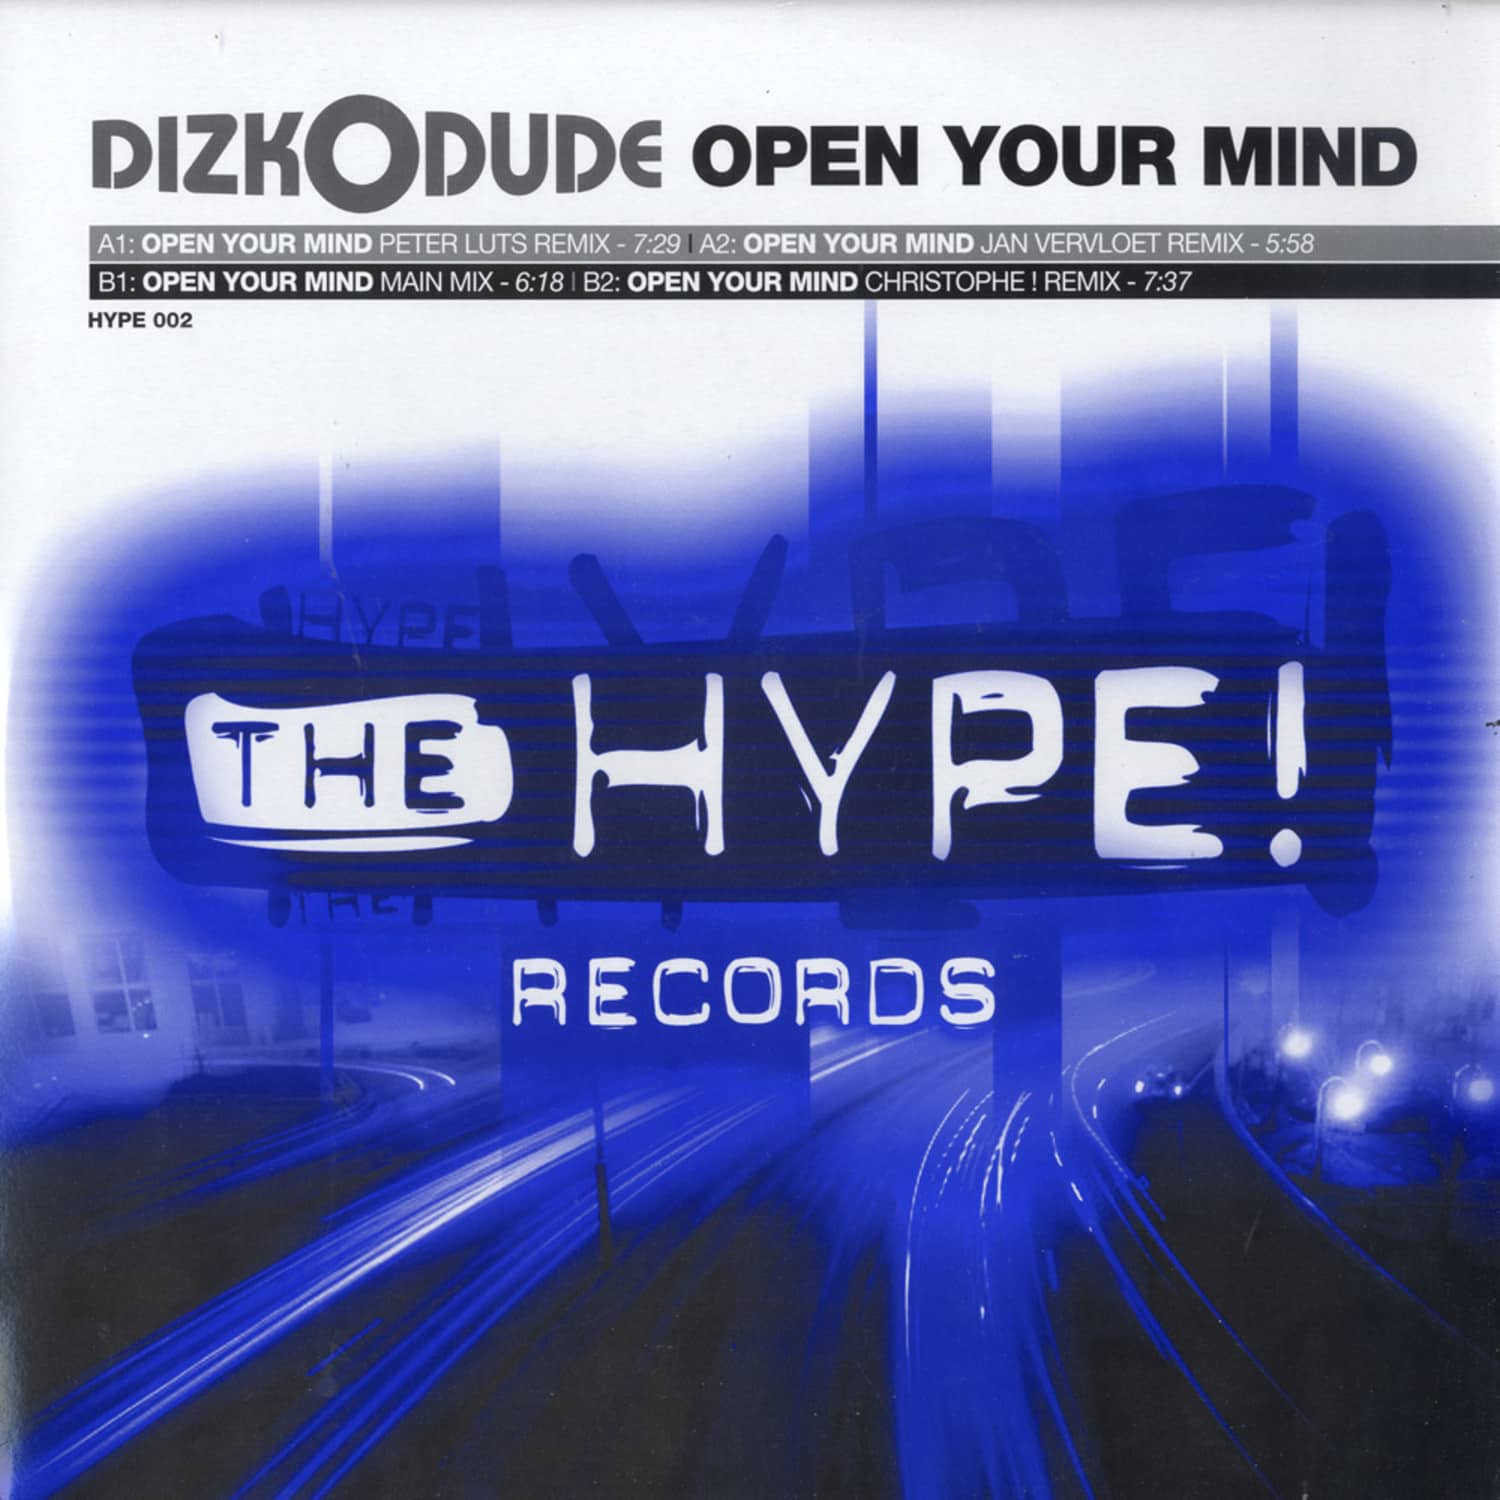 Dizkodude - OPEN YOUR MIND